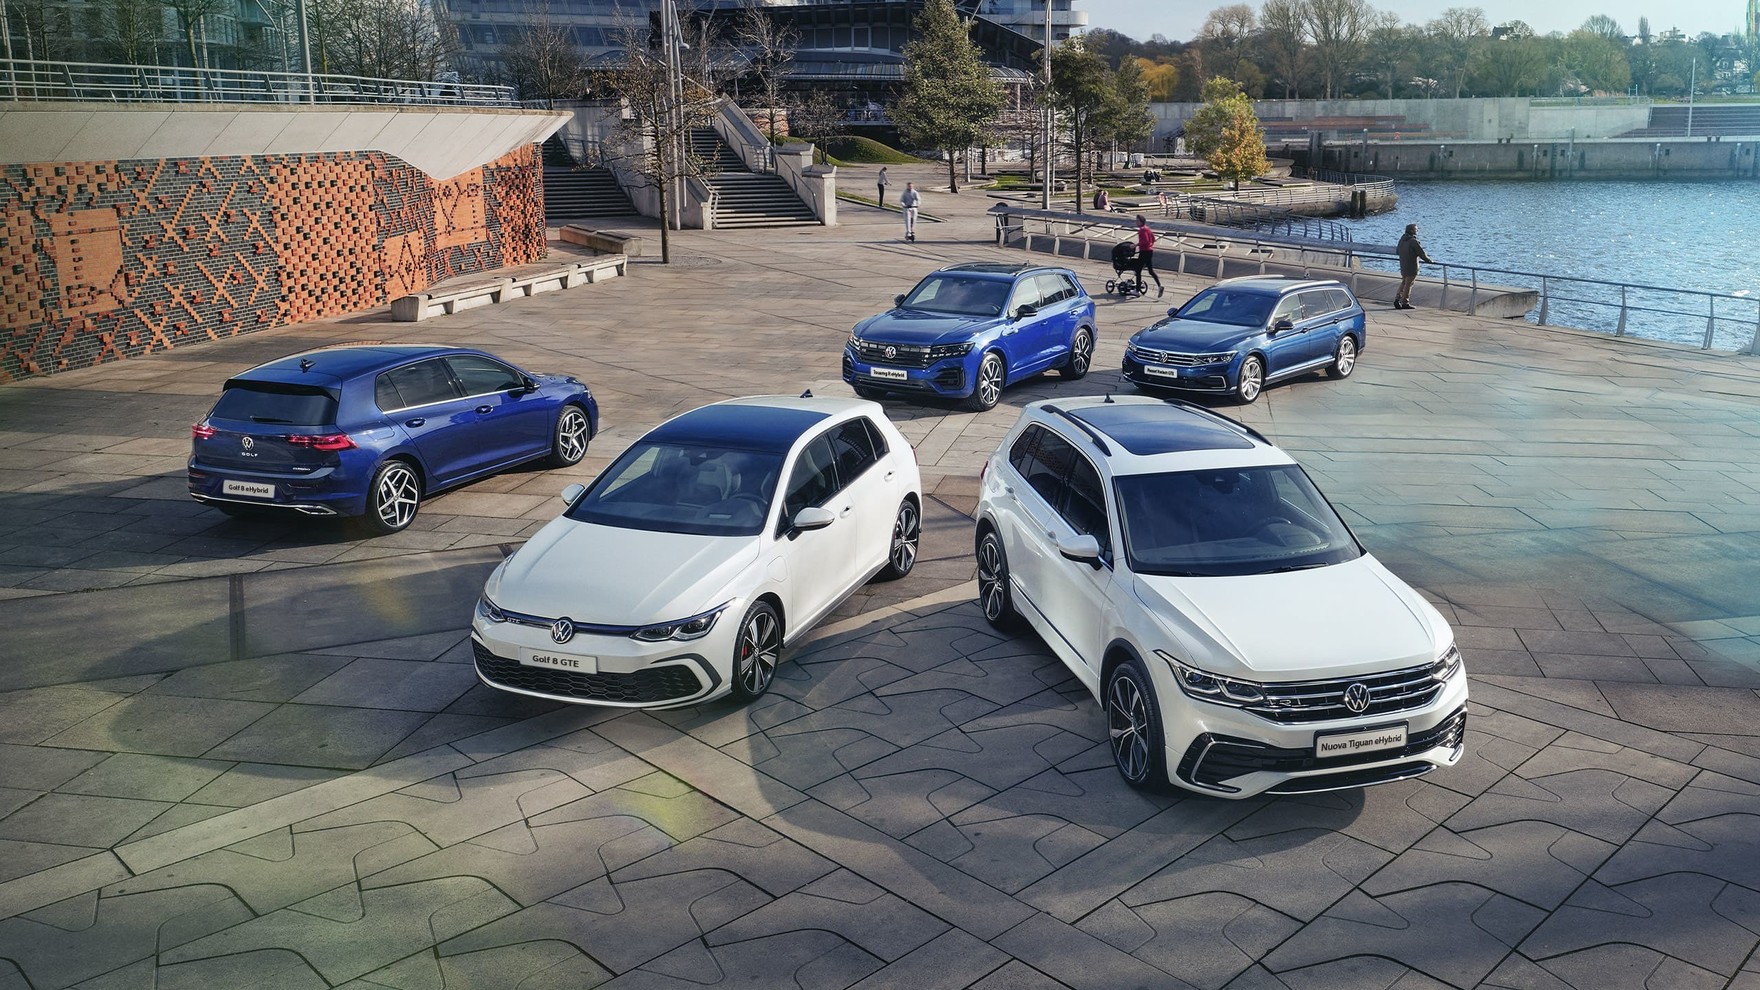 Cinque modelli Volkswagen fermi in un parcheggio. Sullo sfondo uno spazio cittadino.